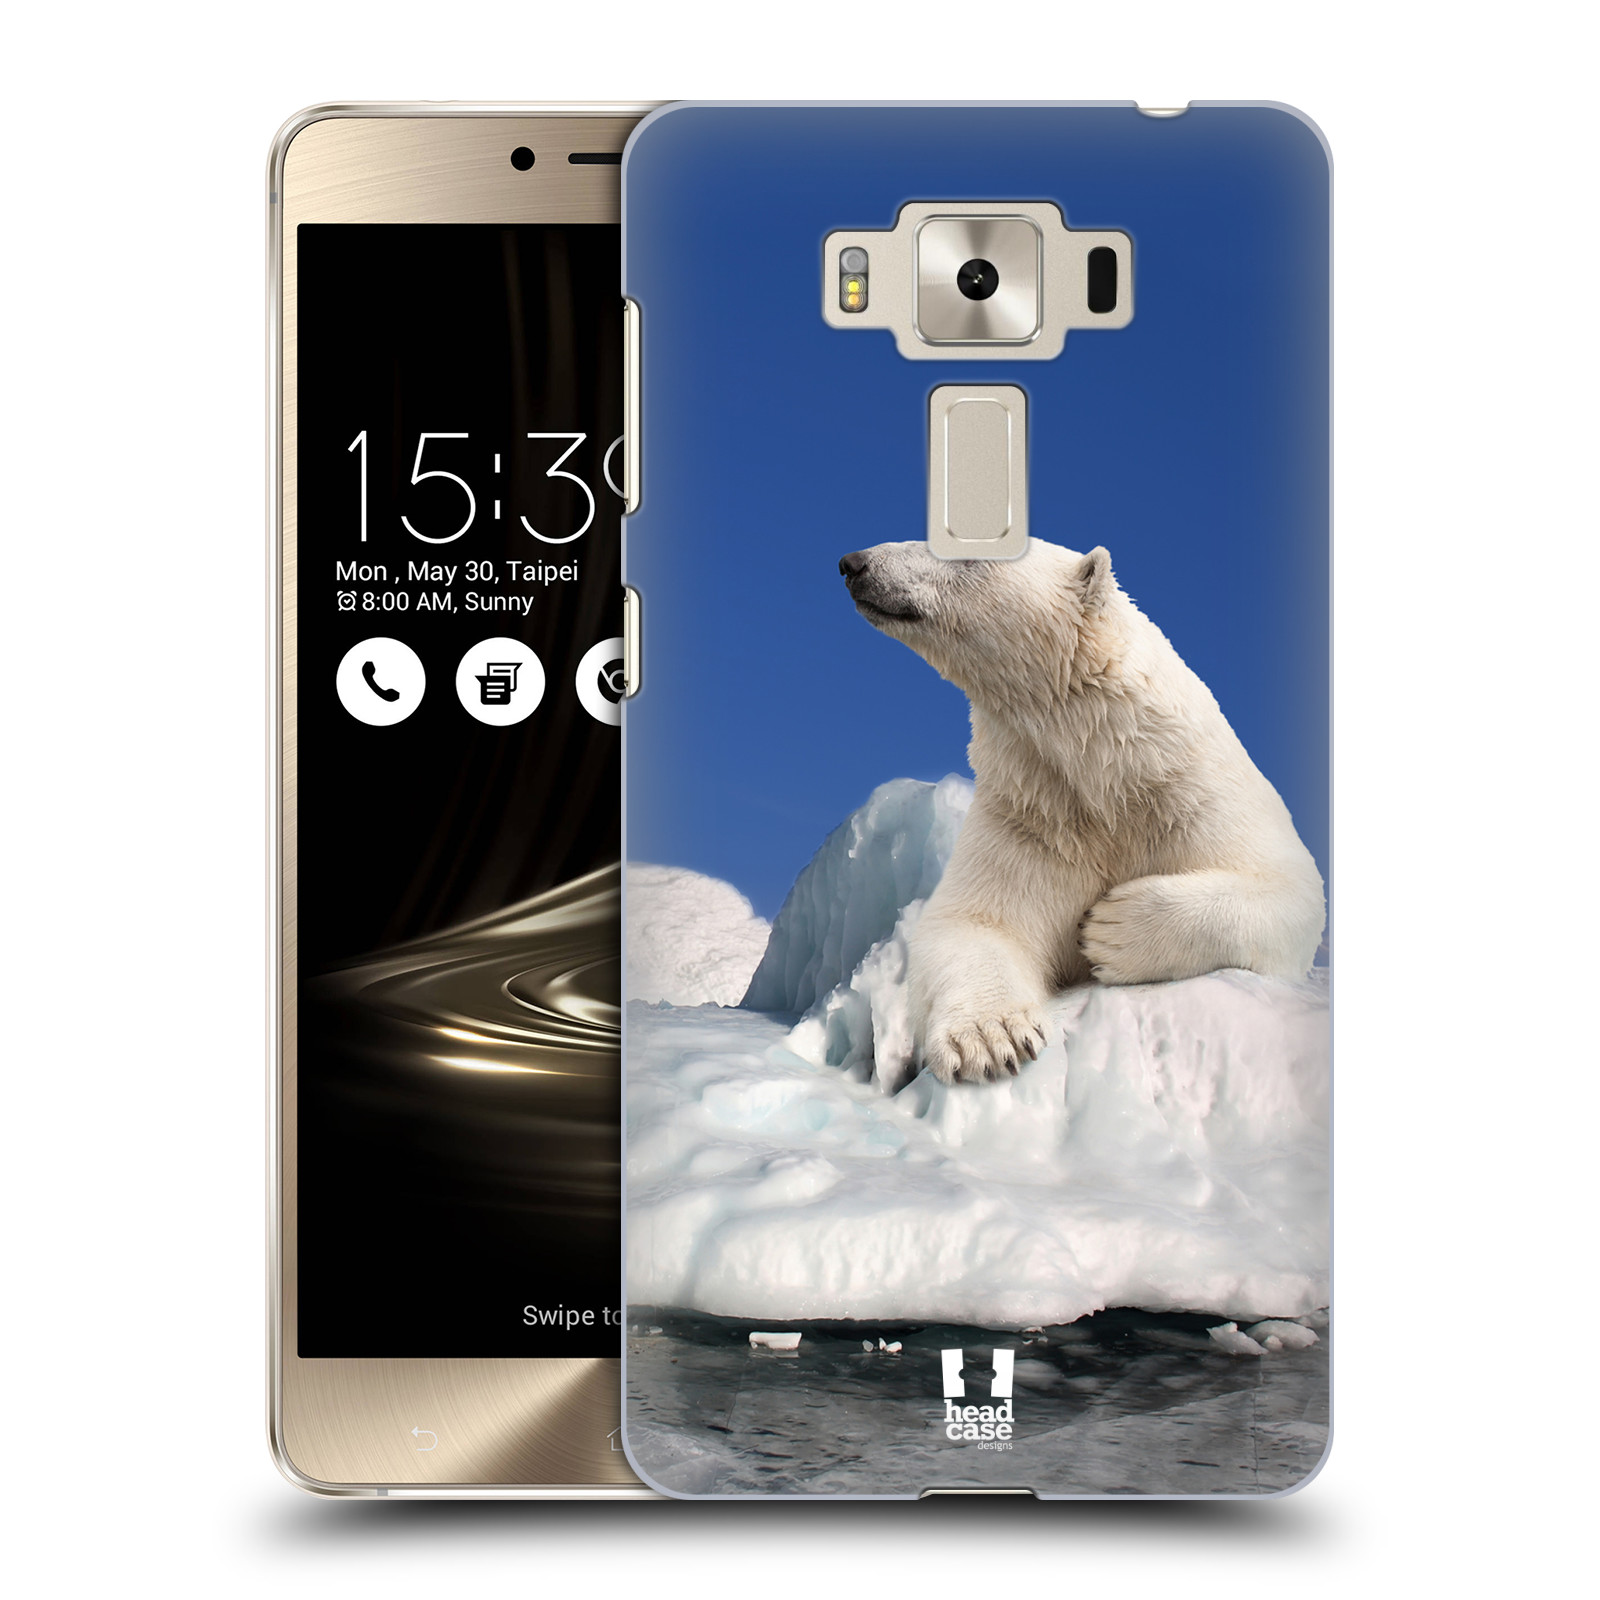 HEAD CASE plastový obal na mobil Asus Zenfone 3 DELUXE ZS550KL vzor Divočina, Divoký život a zvířata foto LEDNÍ MEDVĚD NA LEDOVCI A NEBE MODRÁ